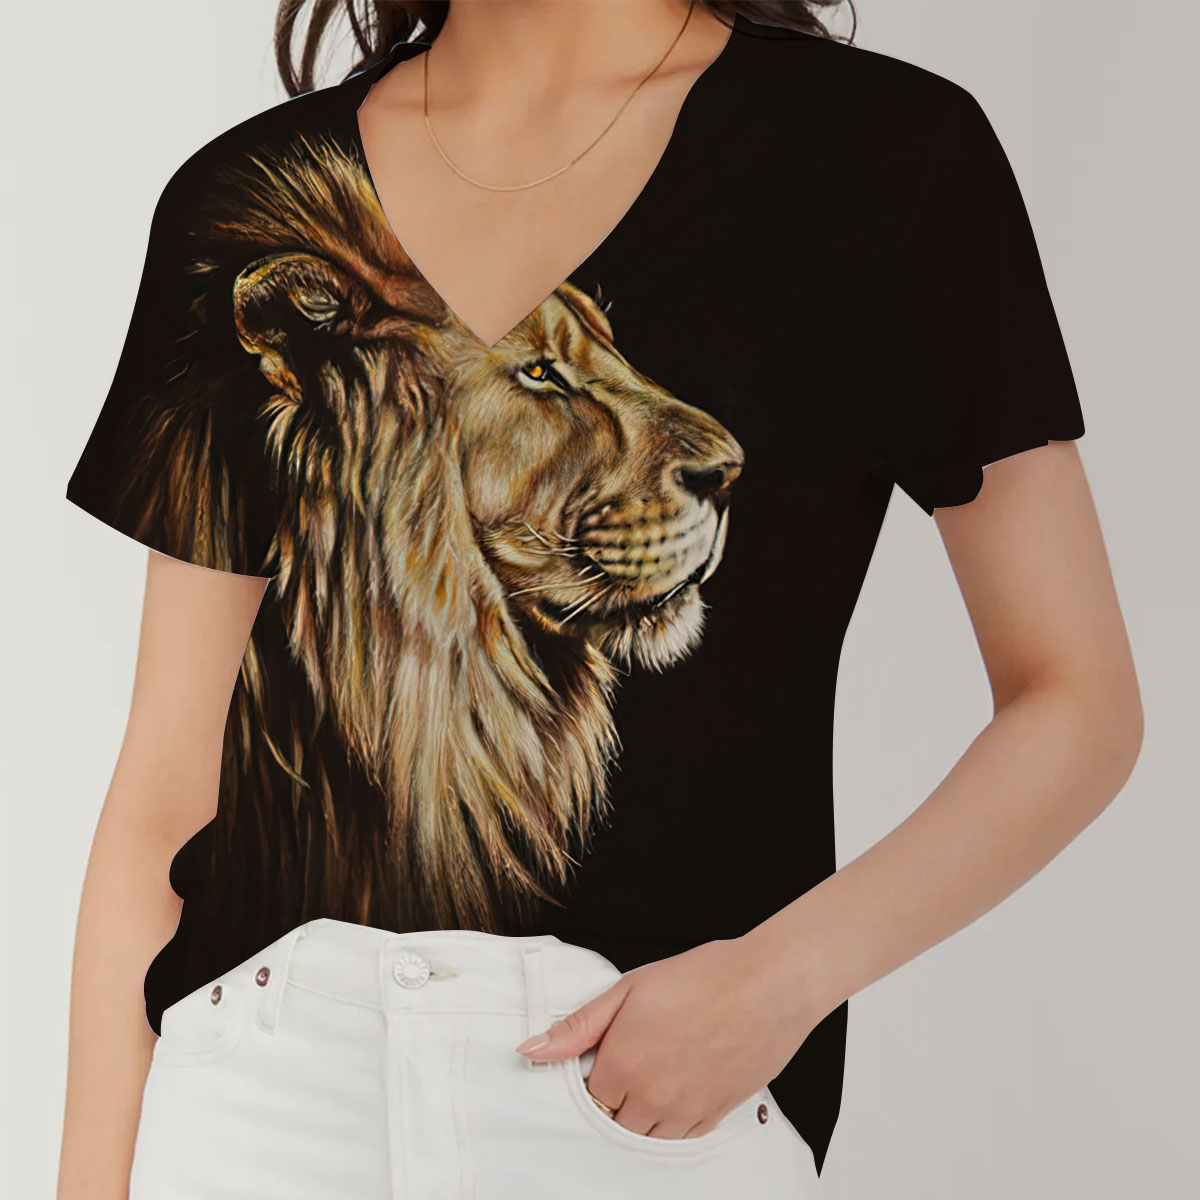 Lion King V-Neck Women's T-Shirt_2_1